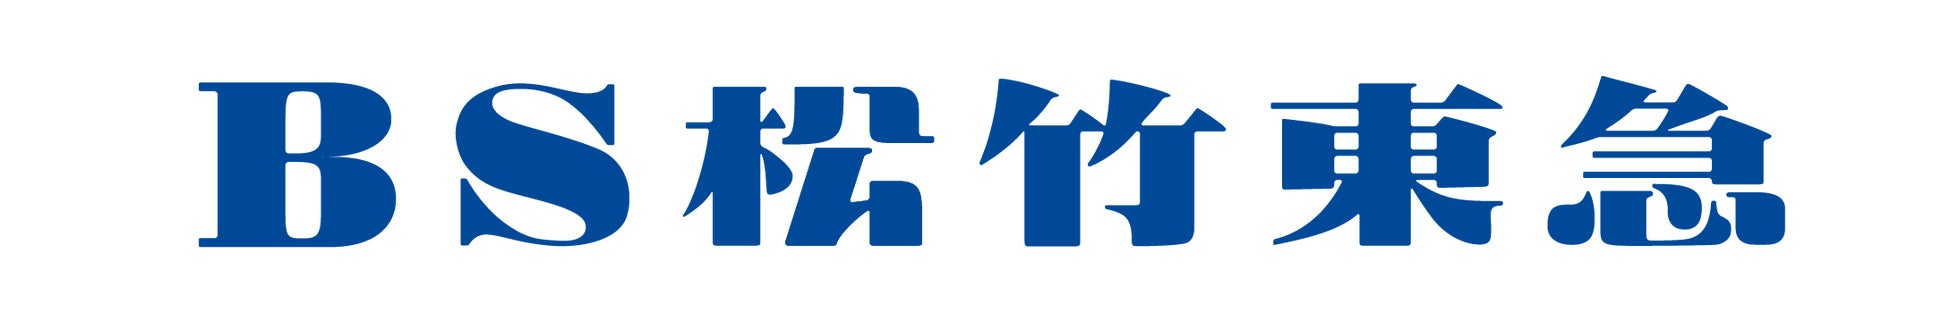 【東京ヴェルディ】BS松竹東急株式会社との新規オフィシャルメディアパートナー契約締結のお知らせ